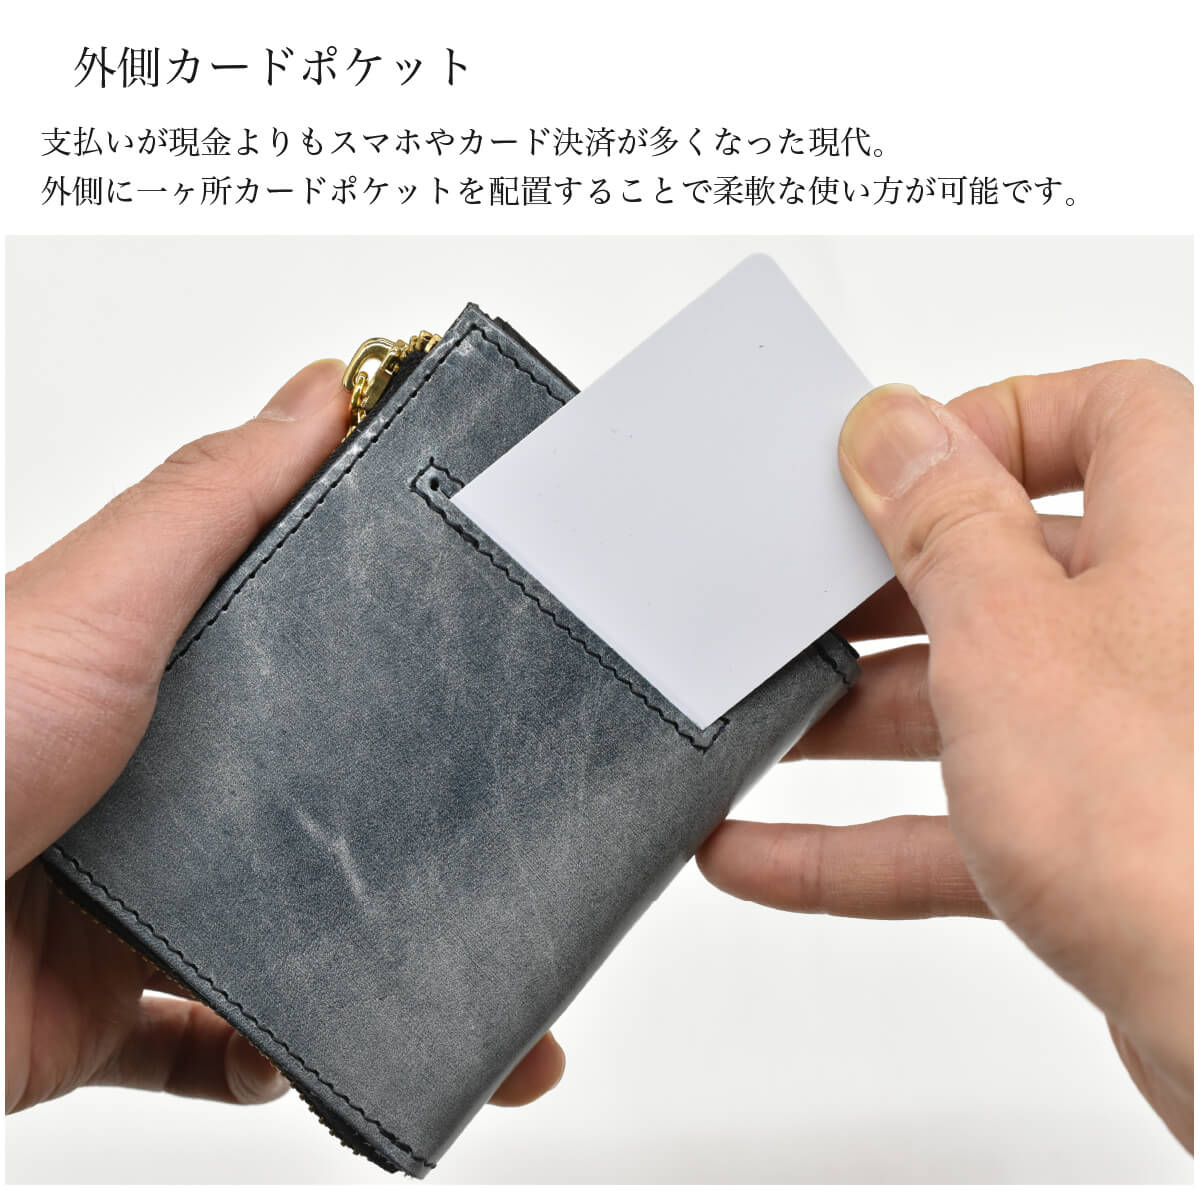 二つ折り財布 メンズ 栃木レザー 財布 日本製 ホワイトワックス TIDY 